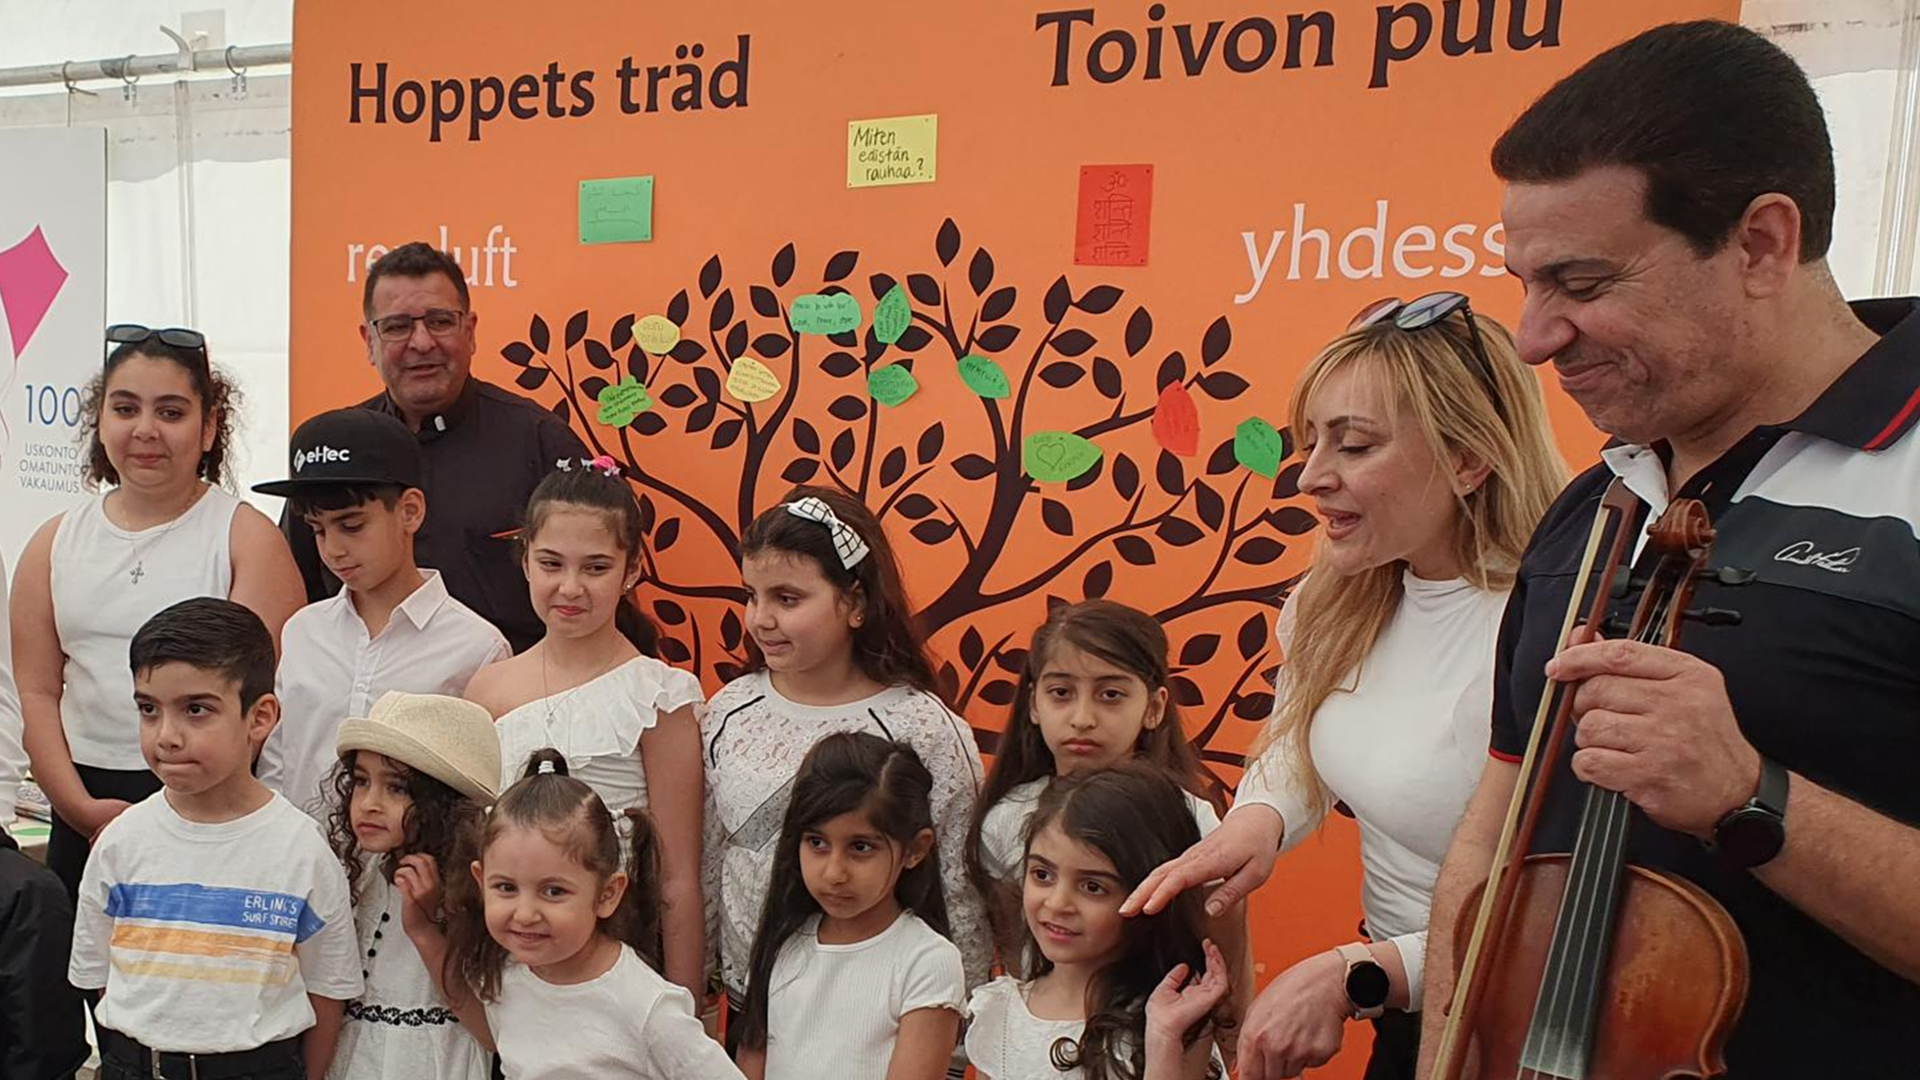 Lapsikuoro valkoisissa puseroissa kuoronjohtajan ja muusikoiden kanssa ryhmäkuvassa, taustalla piirretty toivon puu